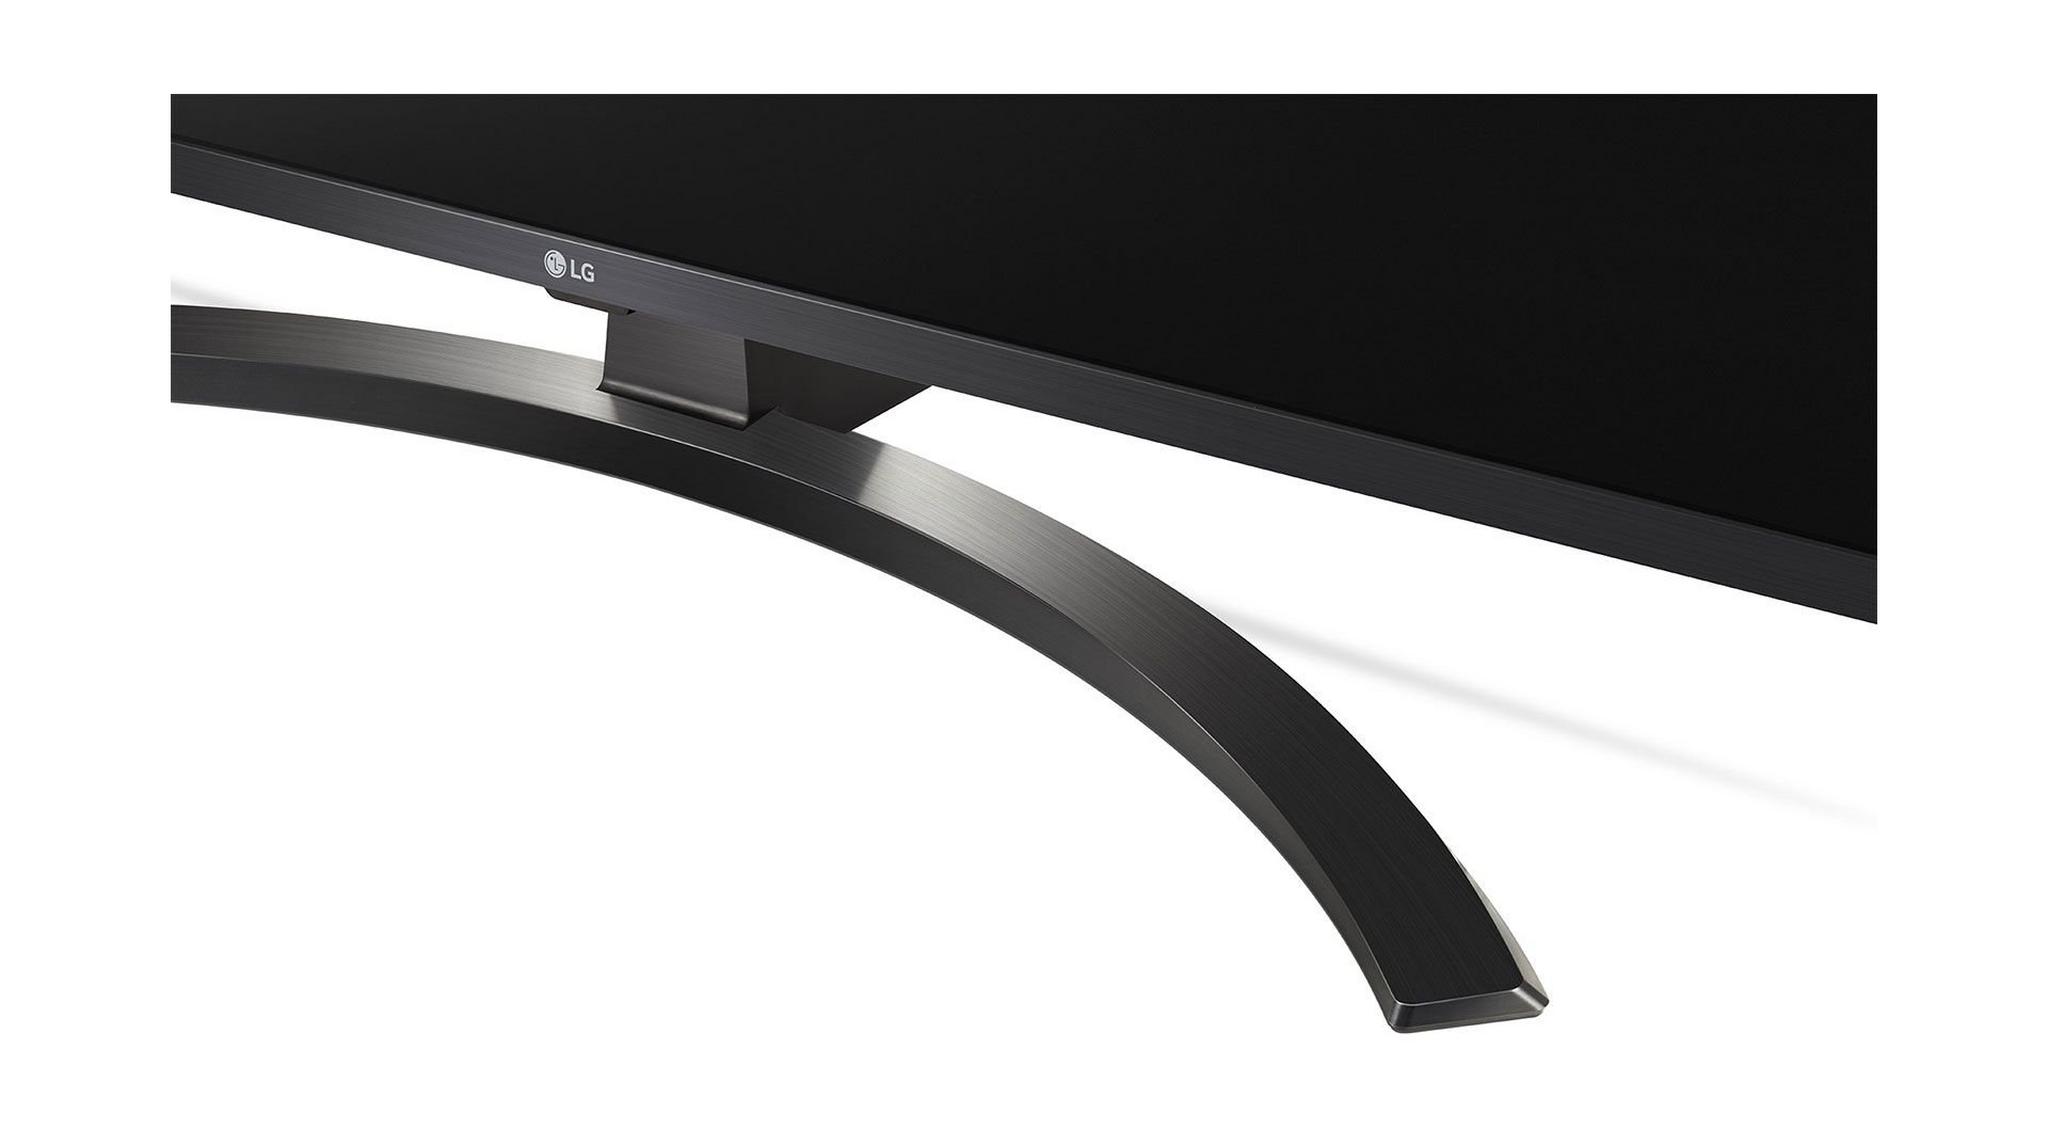 LG 65-inch Ultra HD Smart LED TV - 65UM7450PVA